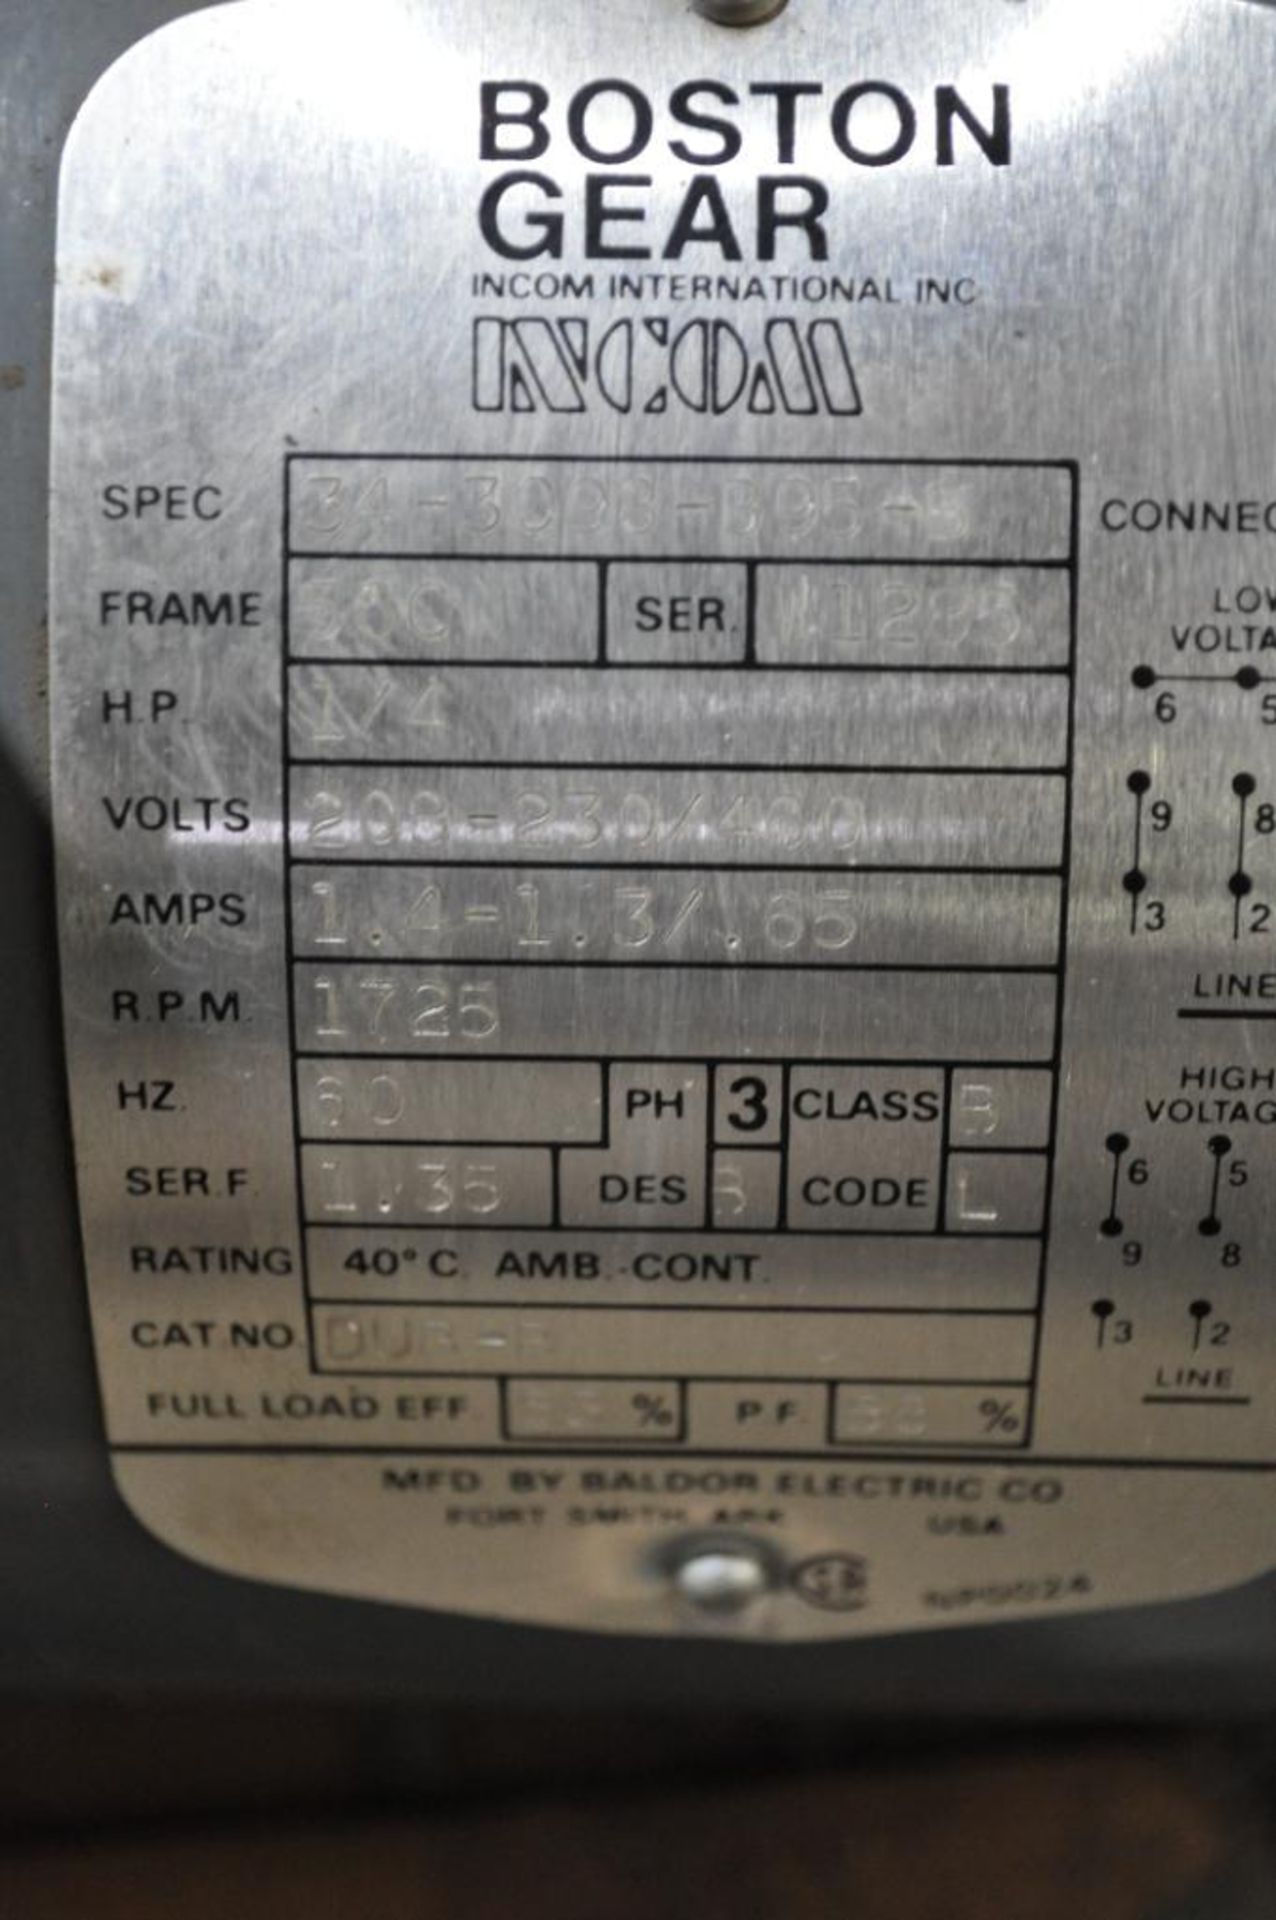 (4) (NIB) BOSTON GEAR 1/4 HP, CAT NO. DUB-B, 208-230/460 V, 1,725 RPM, FRAME 56C - Image 2 of 3